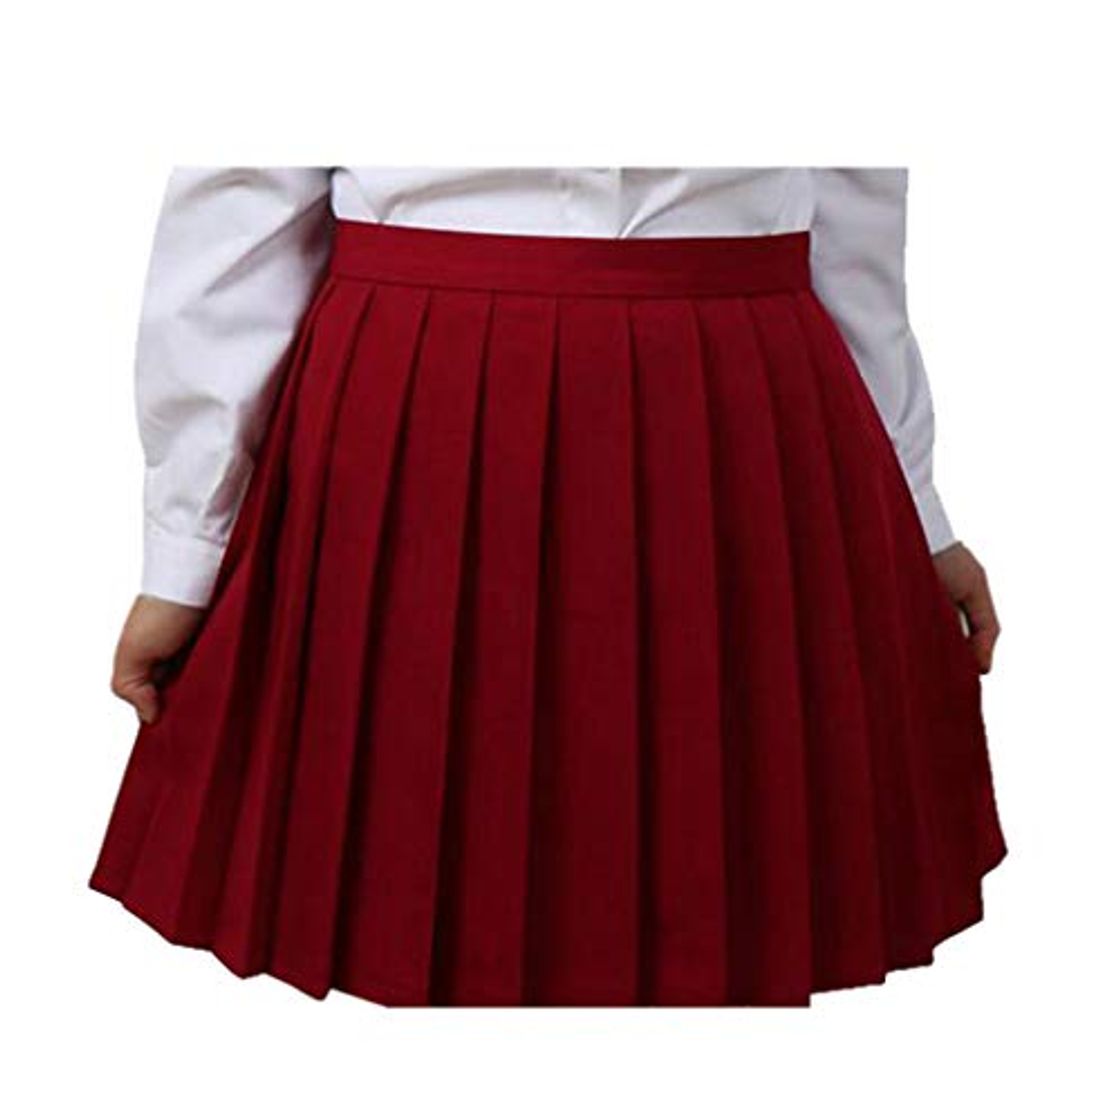 WEIMEITE Trajes Cosplay Plisados Japón Cintura Alta Mujeres Faldas Uniformes Escolares Mujeres Plaid Mini Falda Plisada